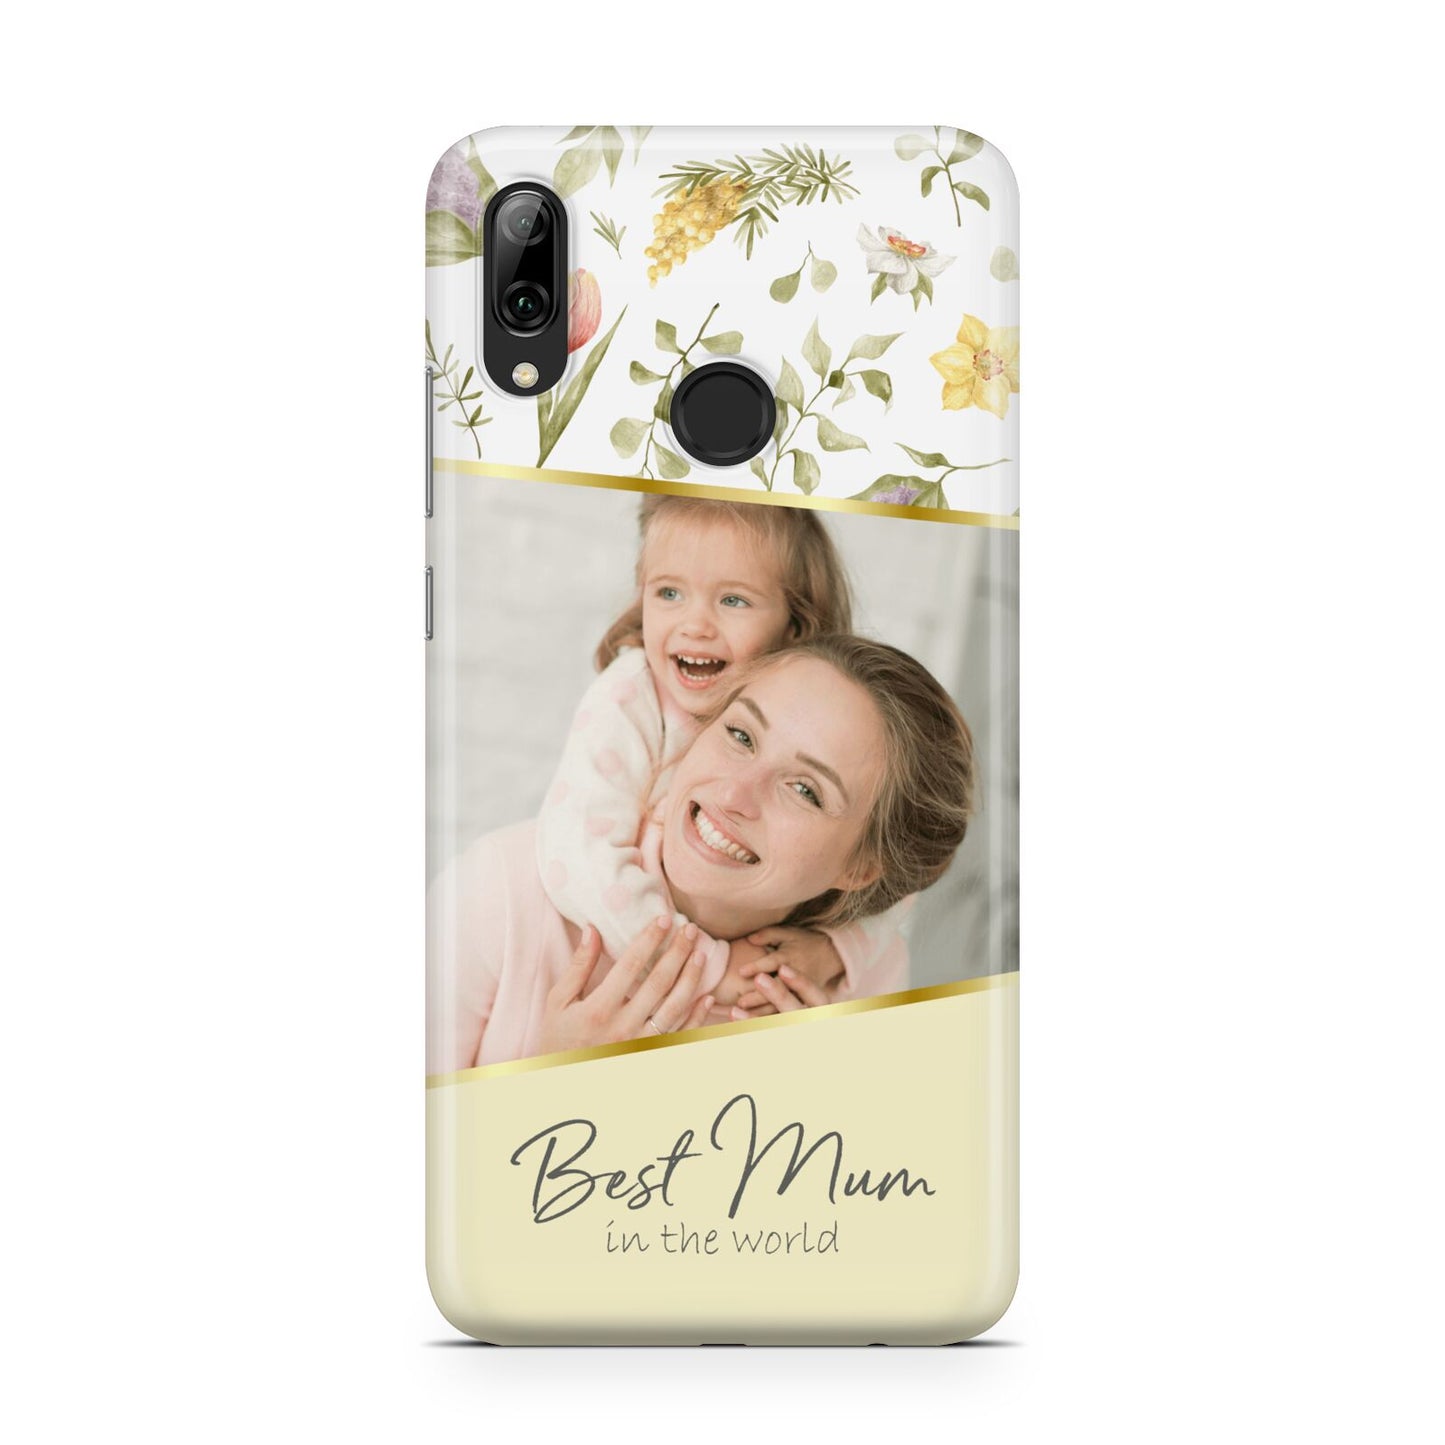 Personalised Best Mum Huawei Y7 2019